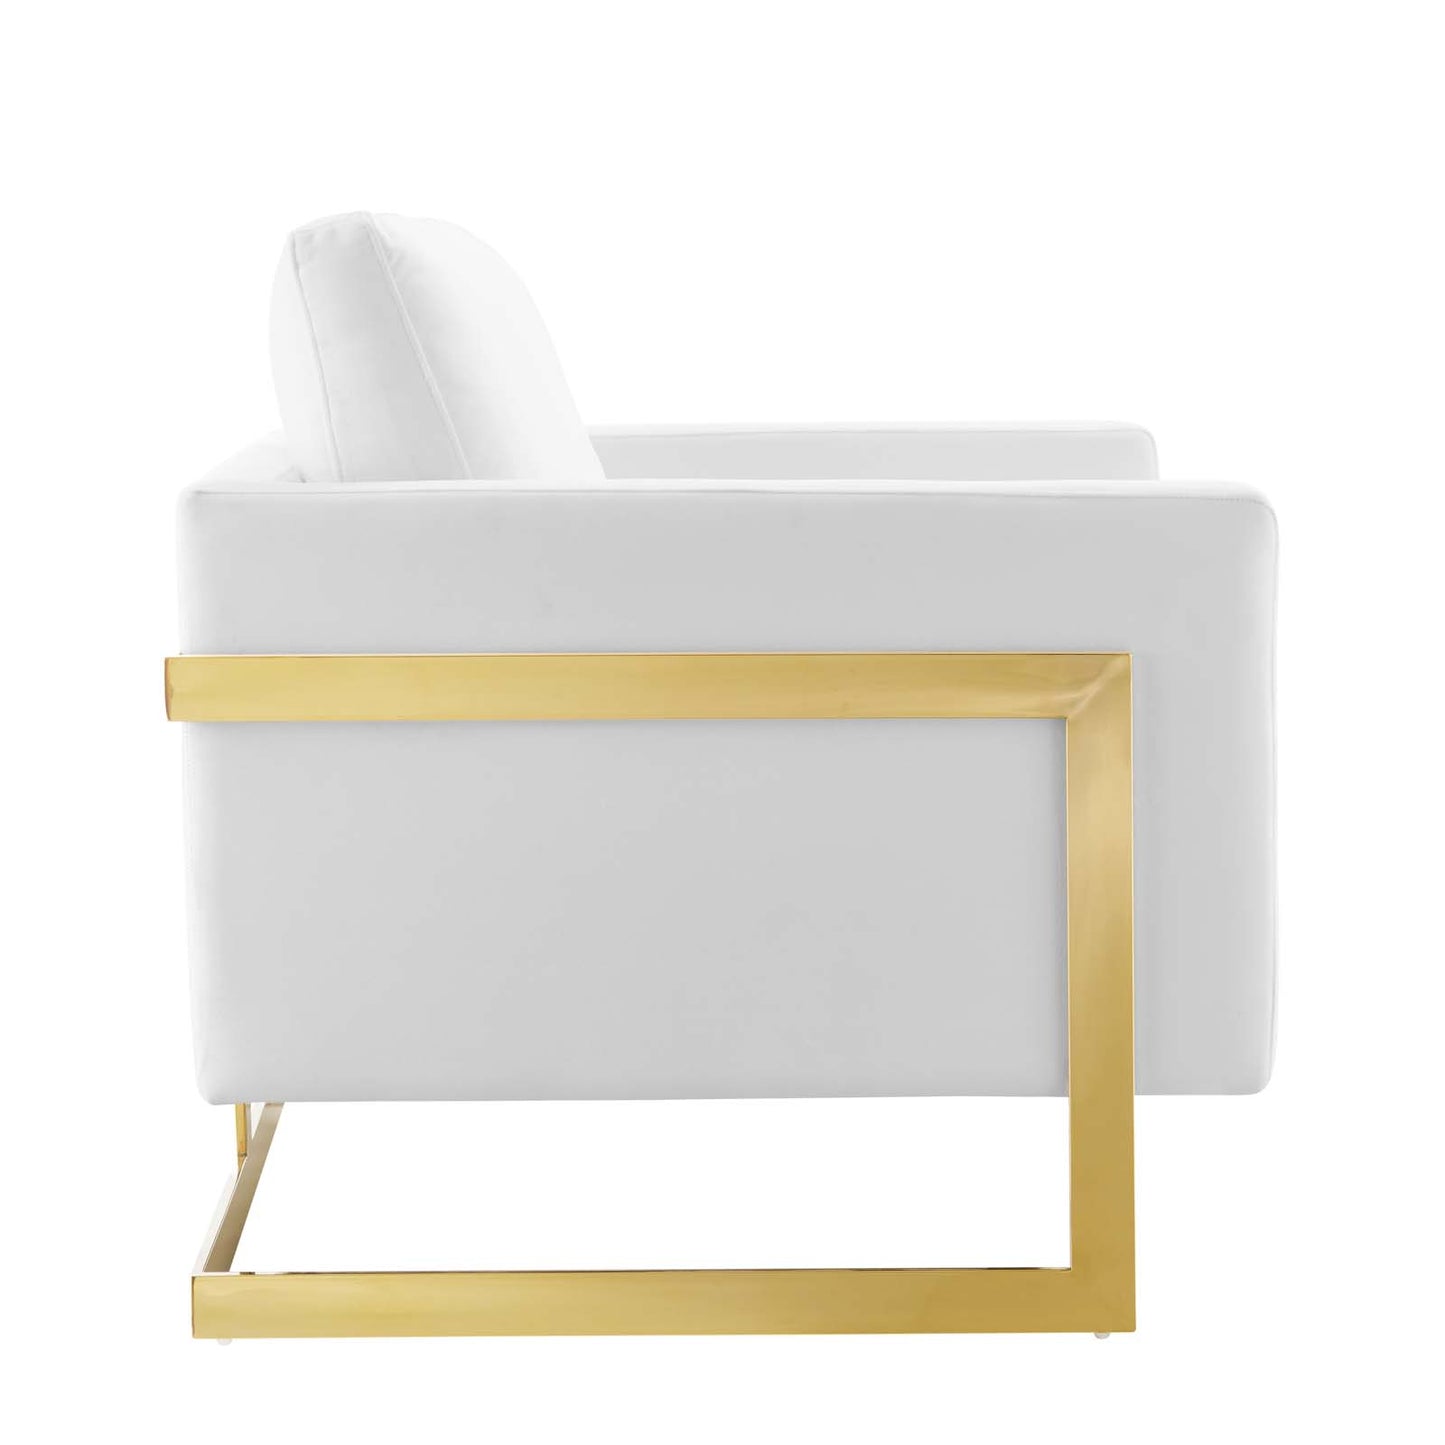 Posse Performance Velvet Accent Chair Gold White EEI-4390-GLD-WHI